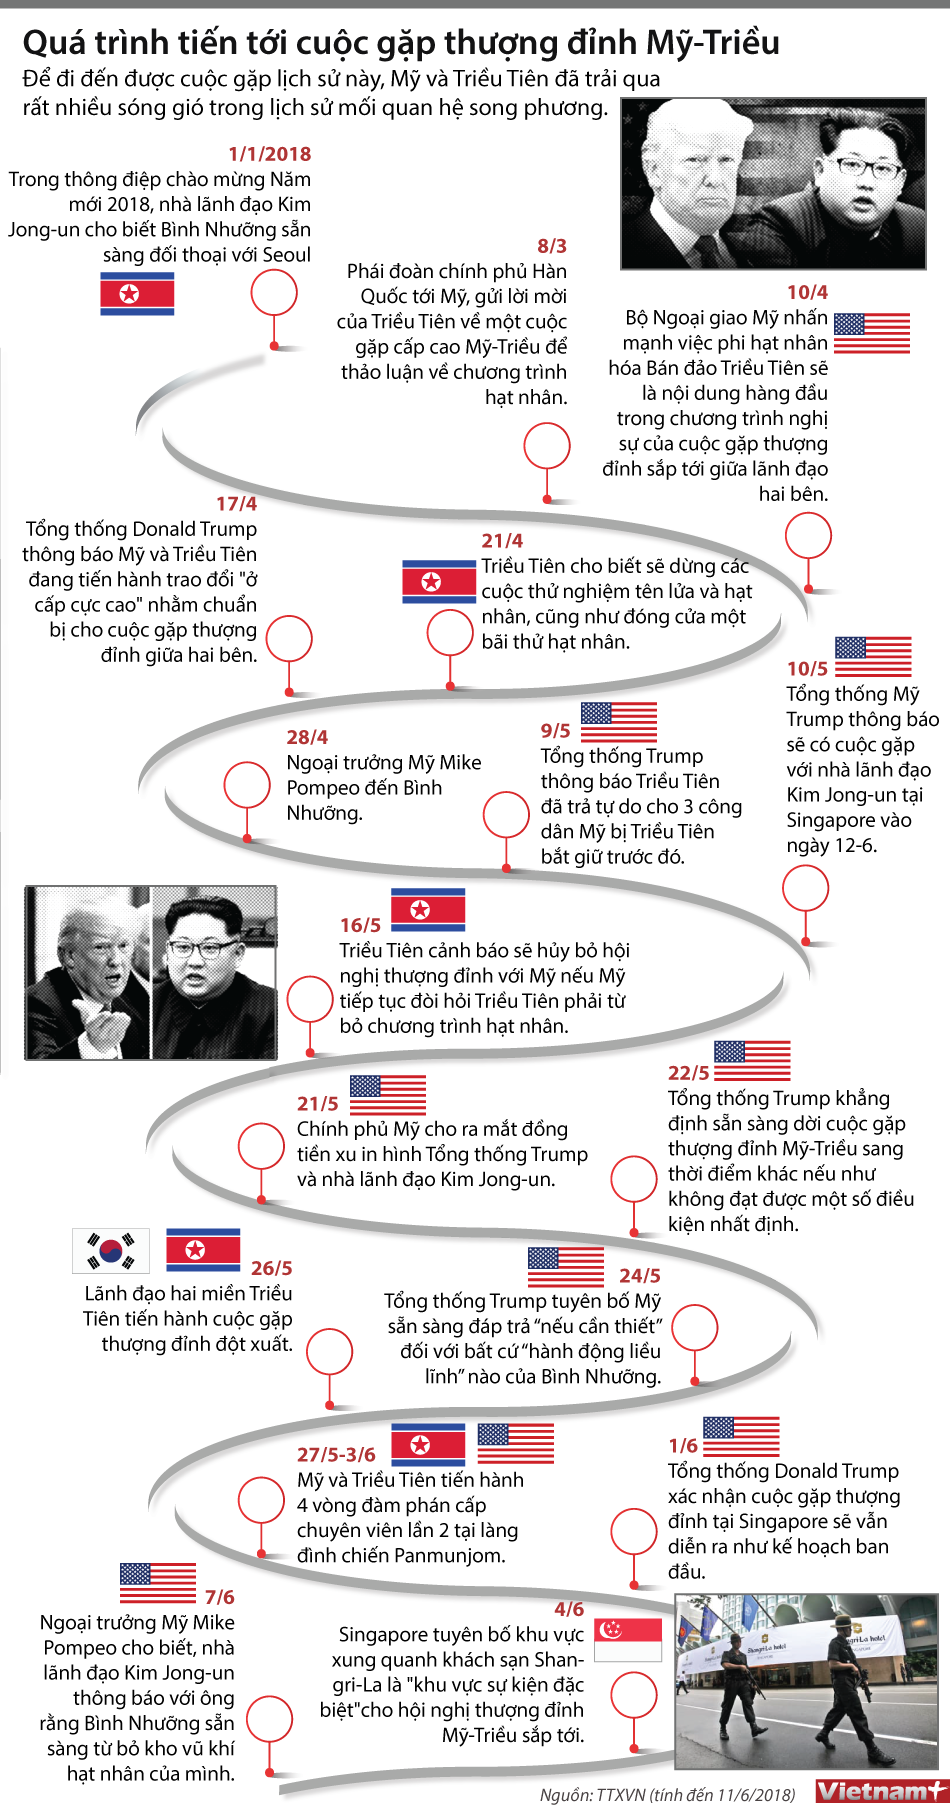 Điểm lại hành trình tới cuộc gặp thượng đỉnh Mỹ-Triều. (Nguồn: Vietnam+)